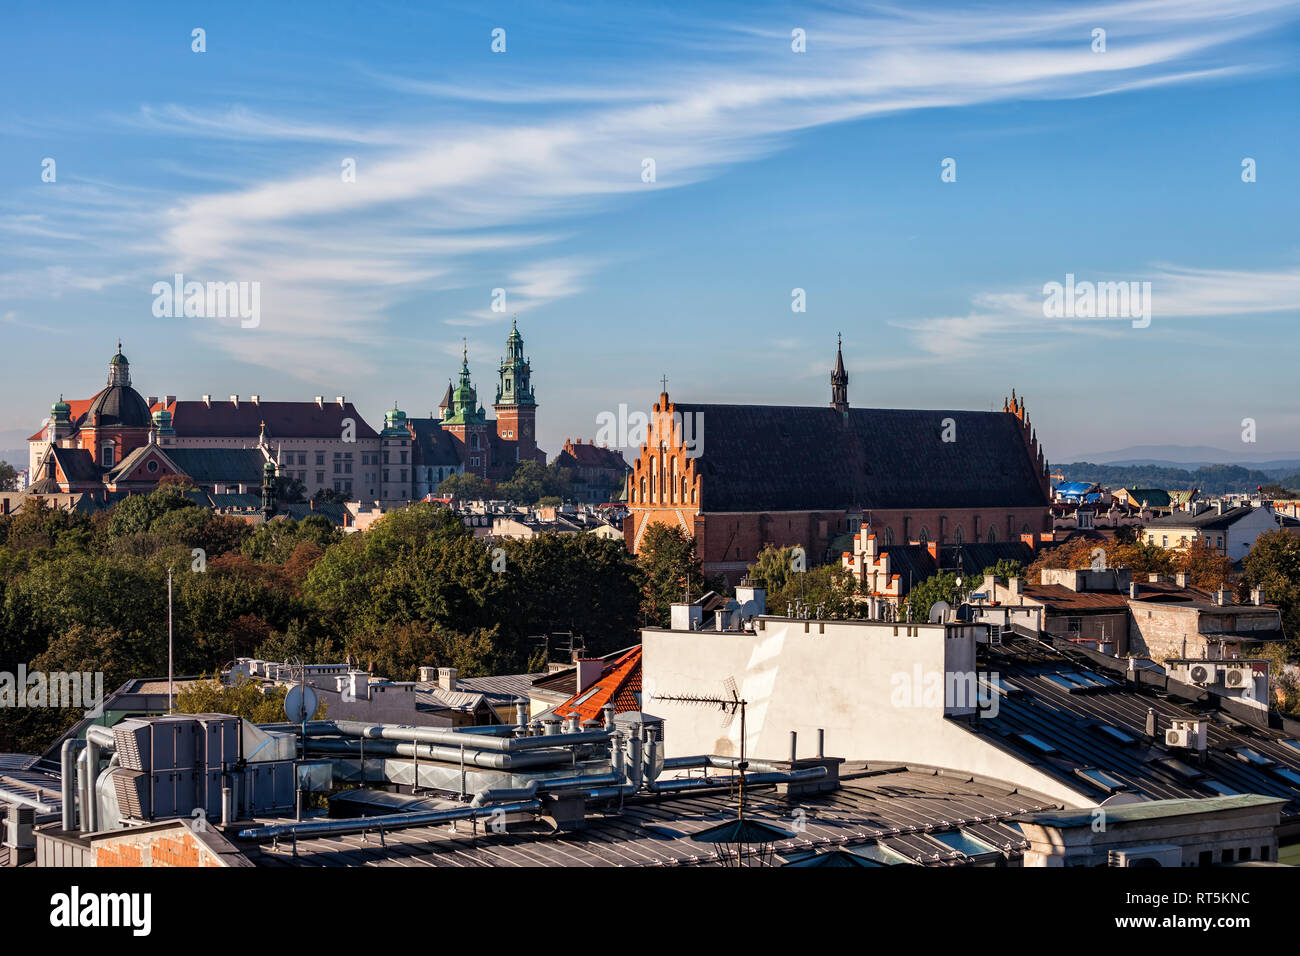 Polonia, Cracovia, centro histórico de la ciudad paisaje con el castillo de Wawel y la iglesia de la Santísima Trinidad Foto de stock